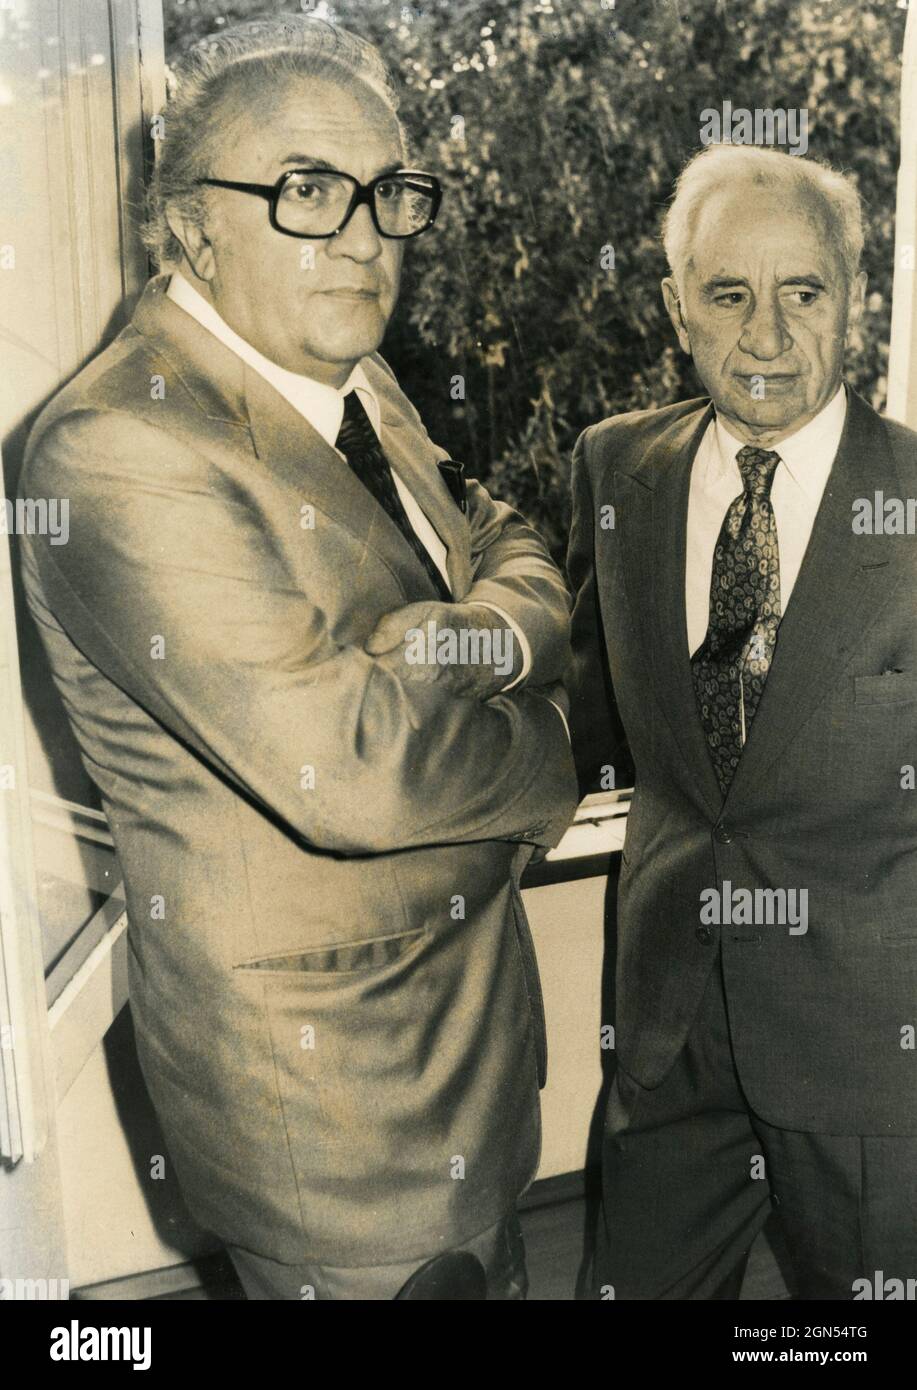 Elia Kazan, réalisateur américano-grec, et Federico Fellini, réalisateur italien, années 1980 Banque D'Images